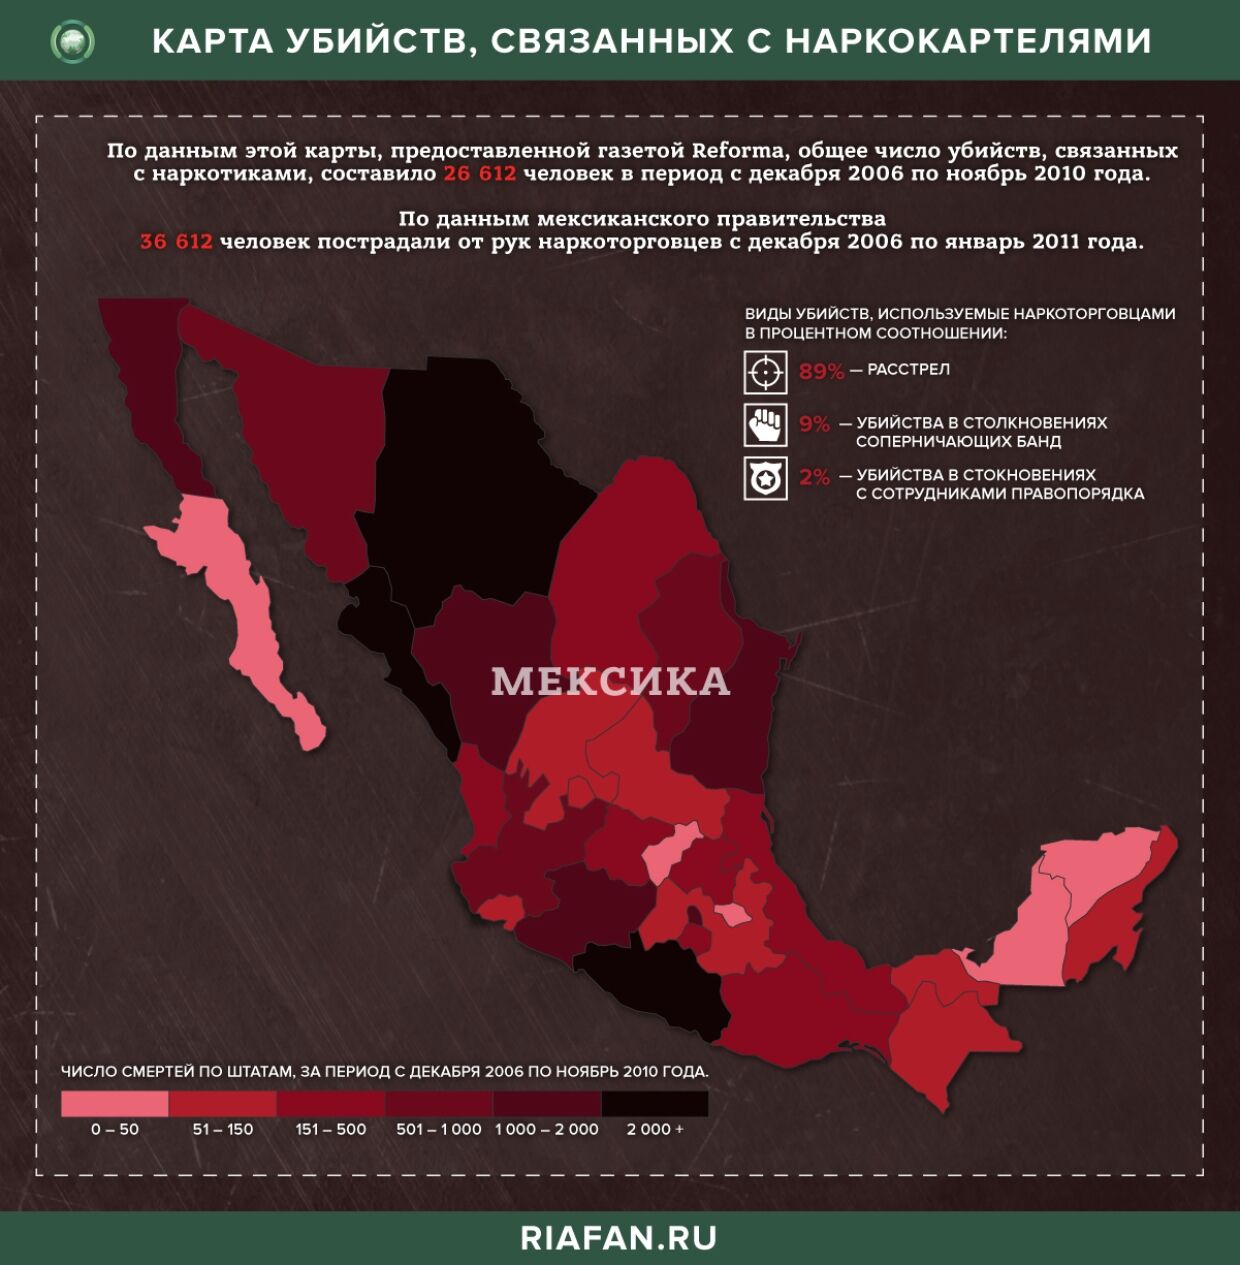 Картель Синалоа: мексиканский наркотрафик от США до Китая